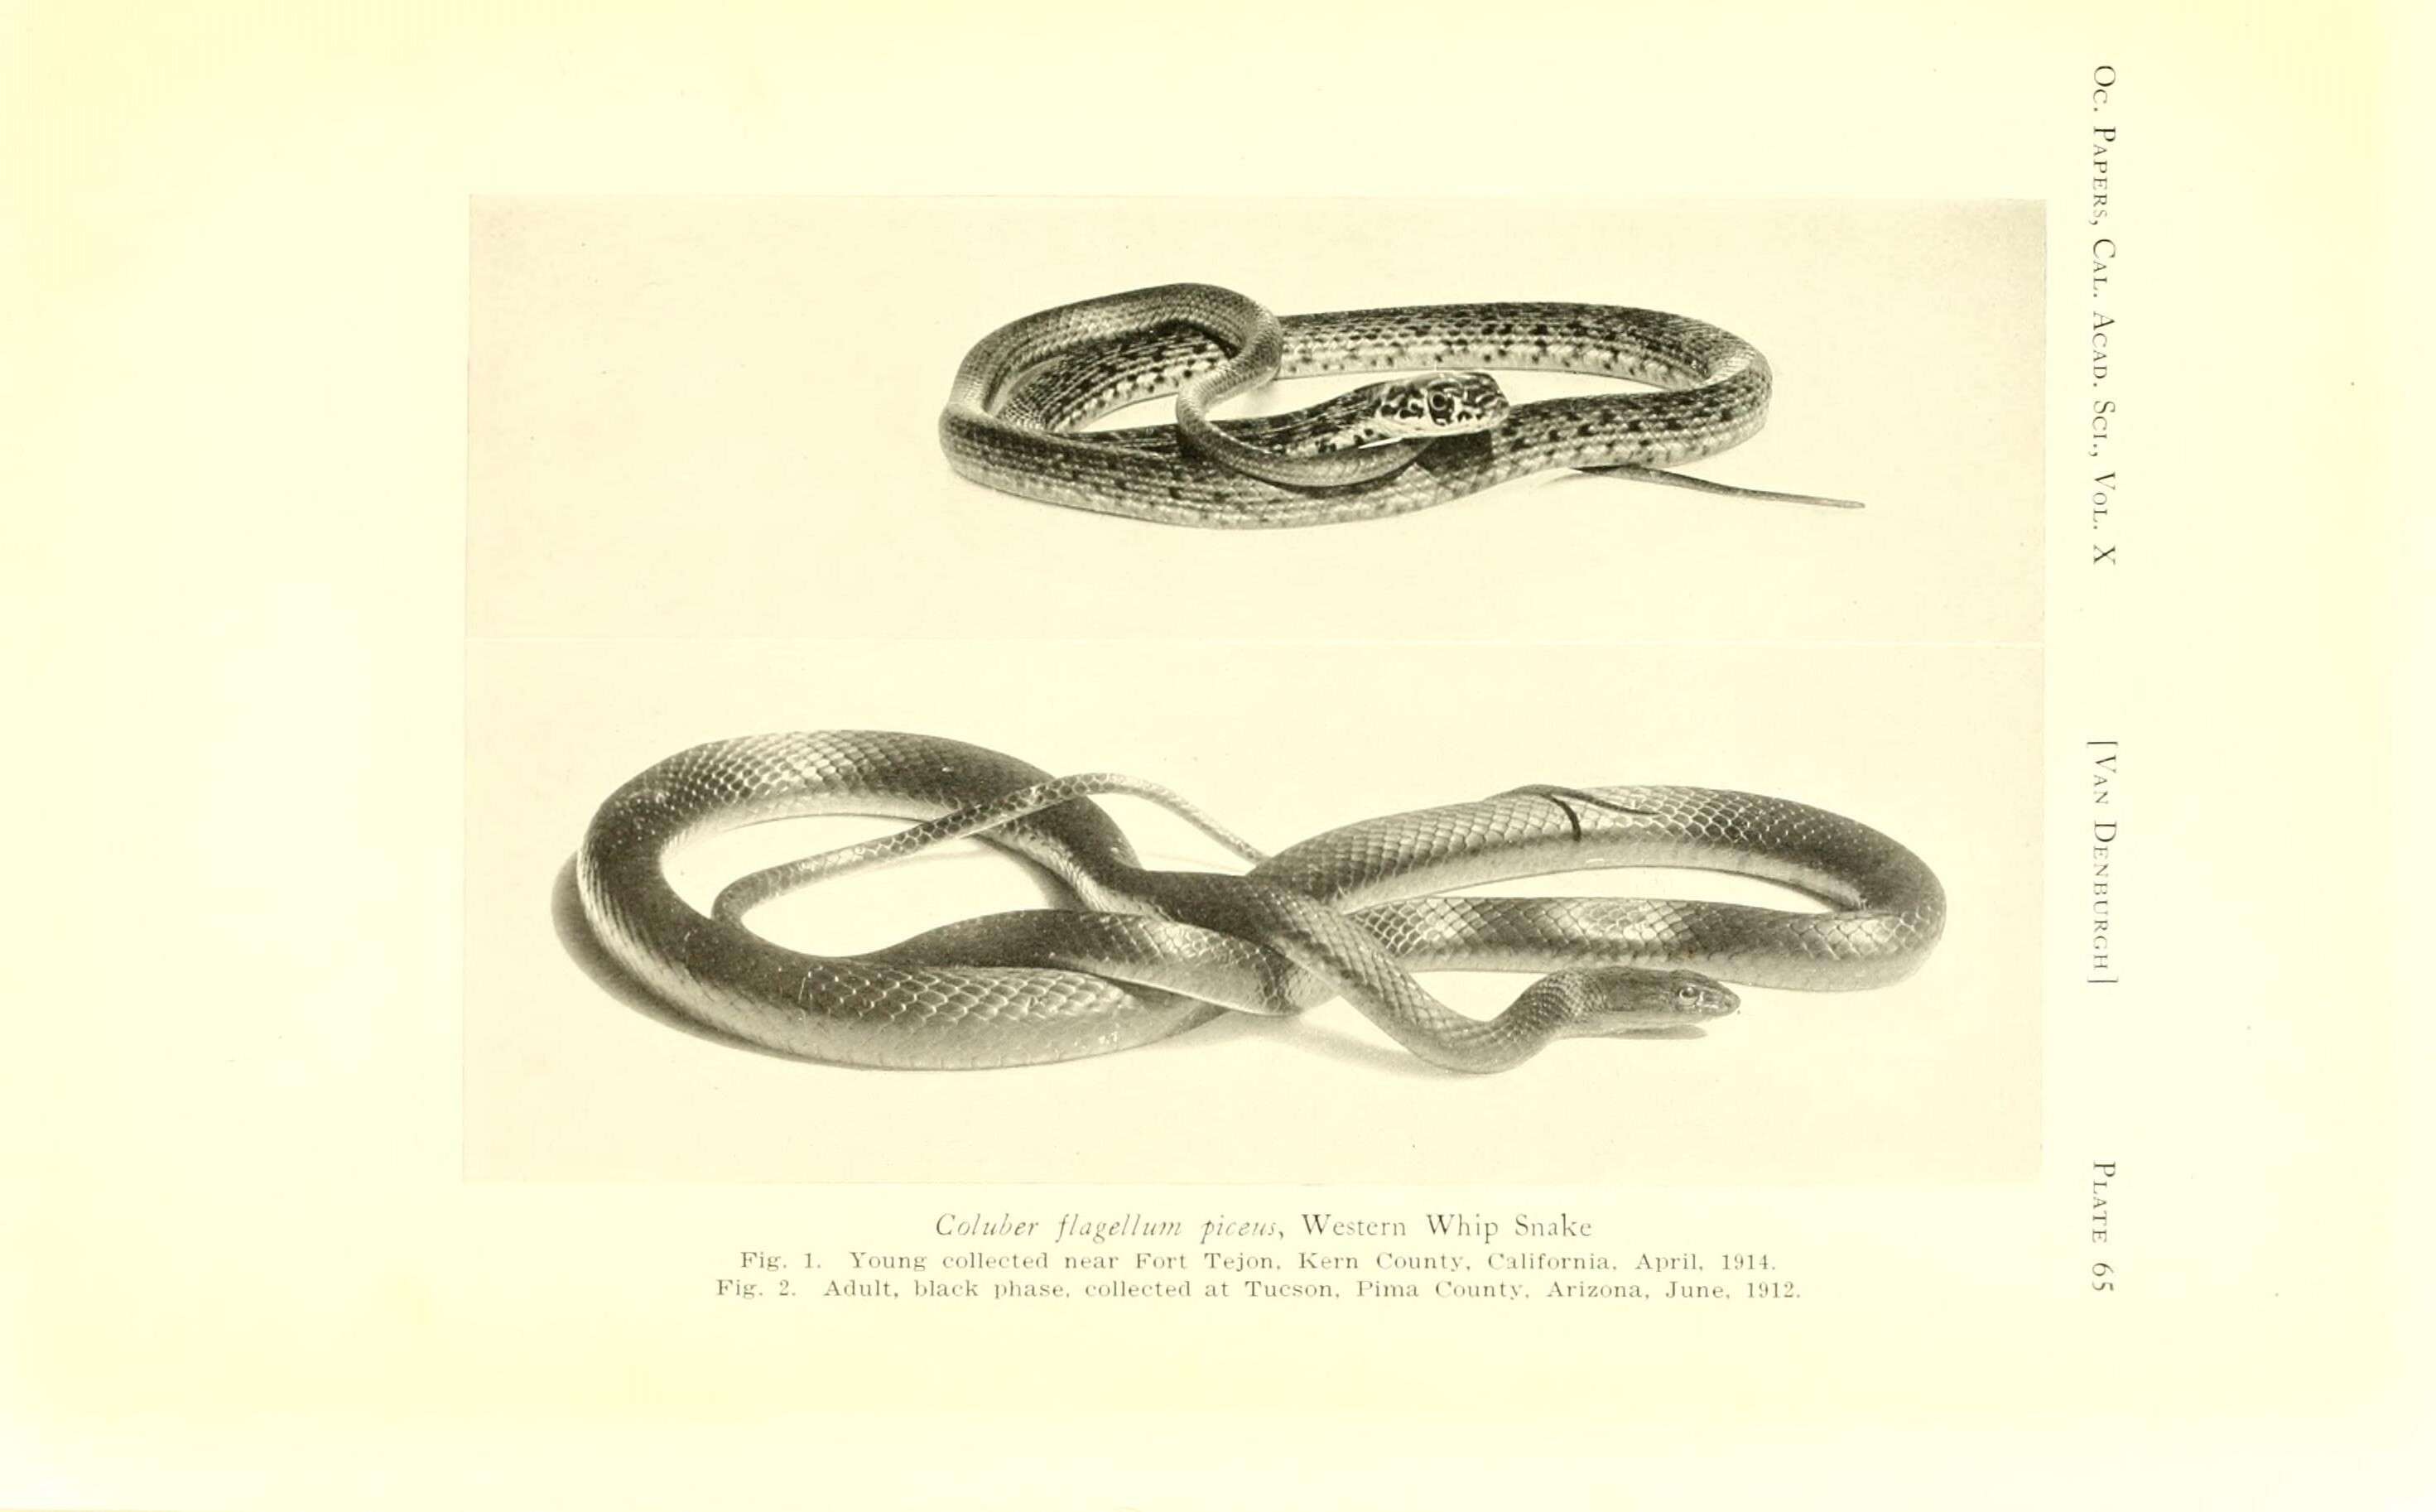 Image of Coluber flagellum piceus (Cope 1892)